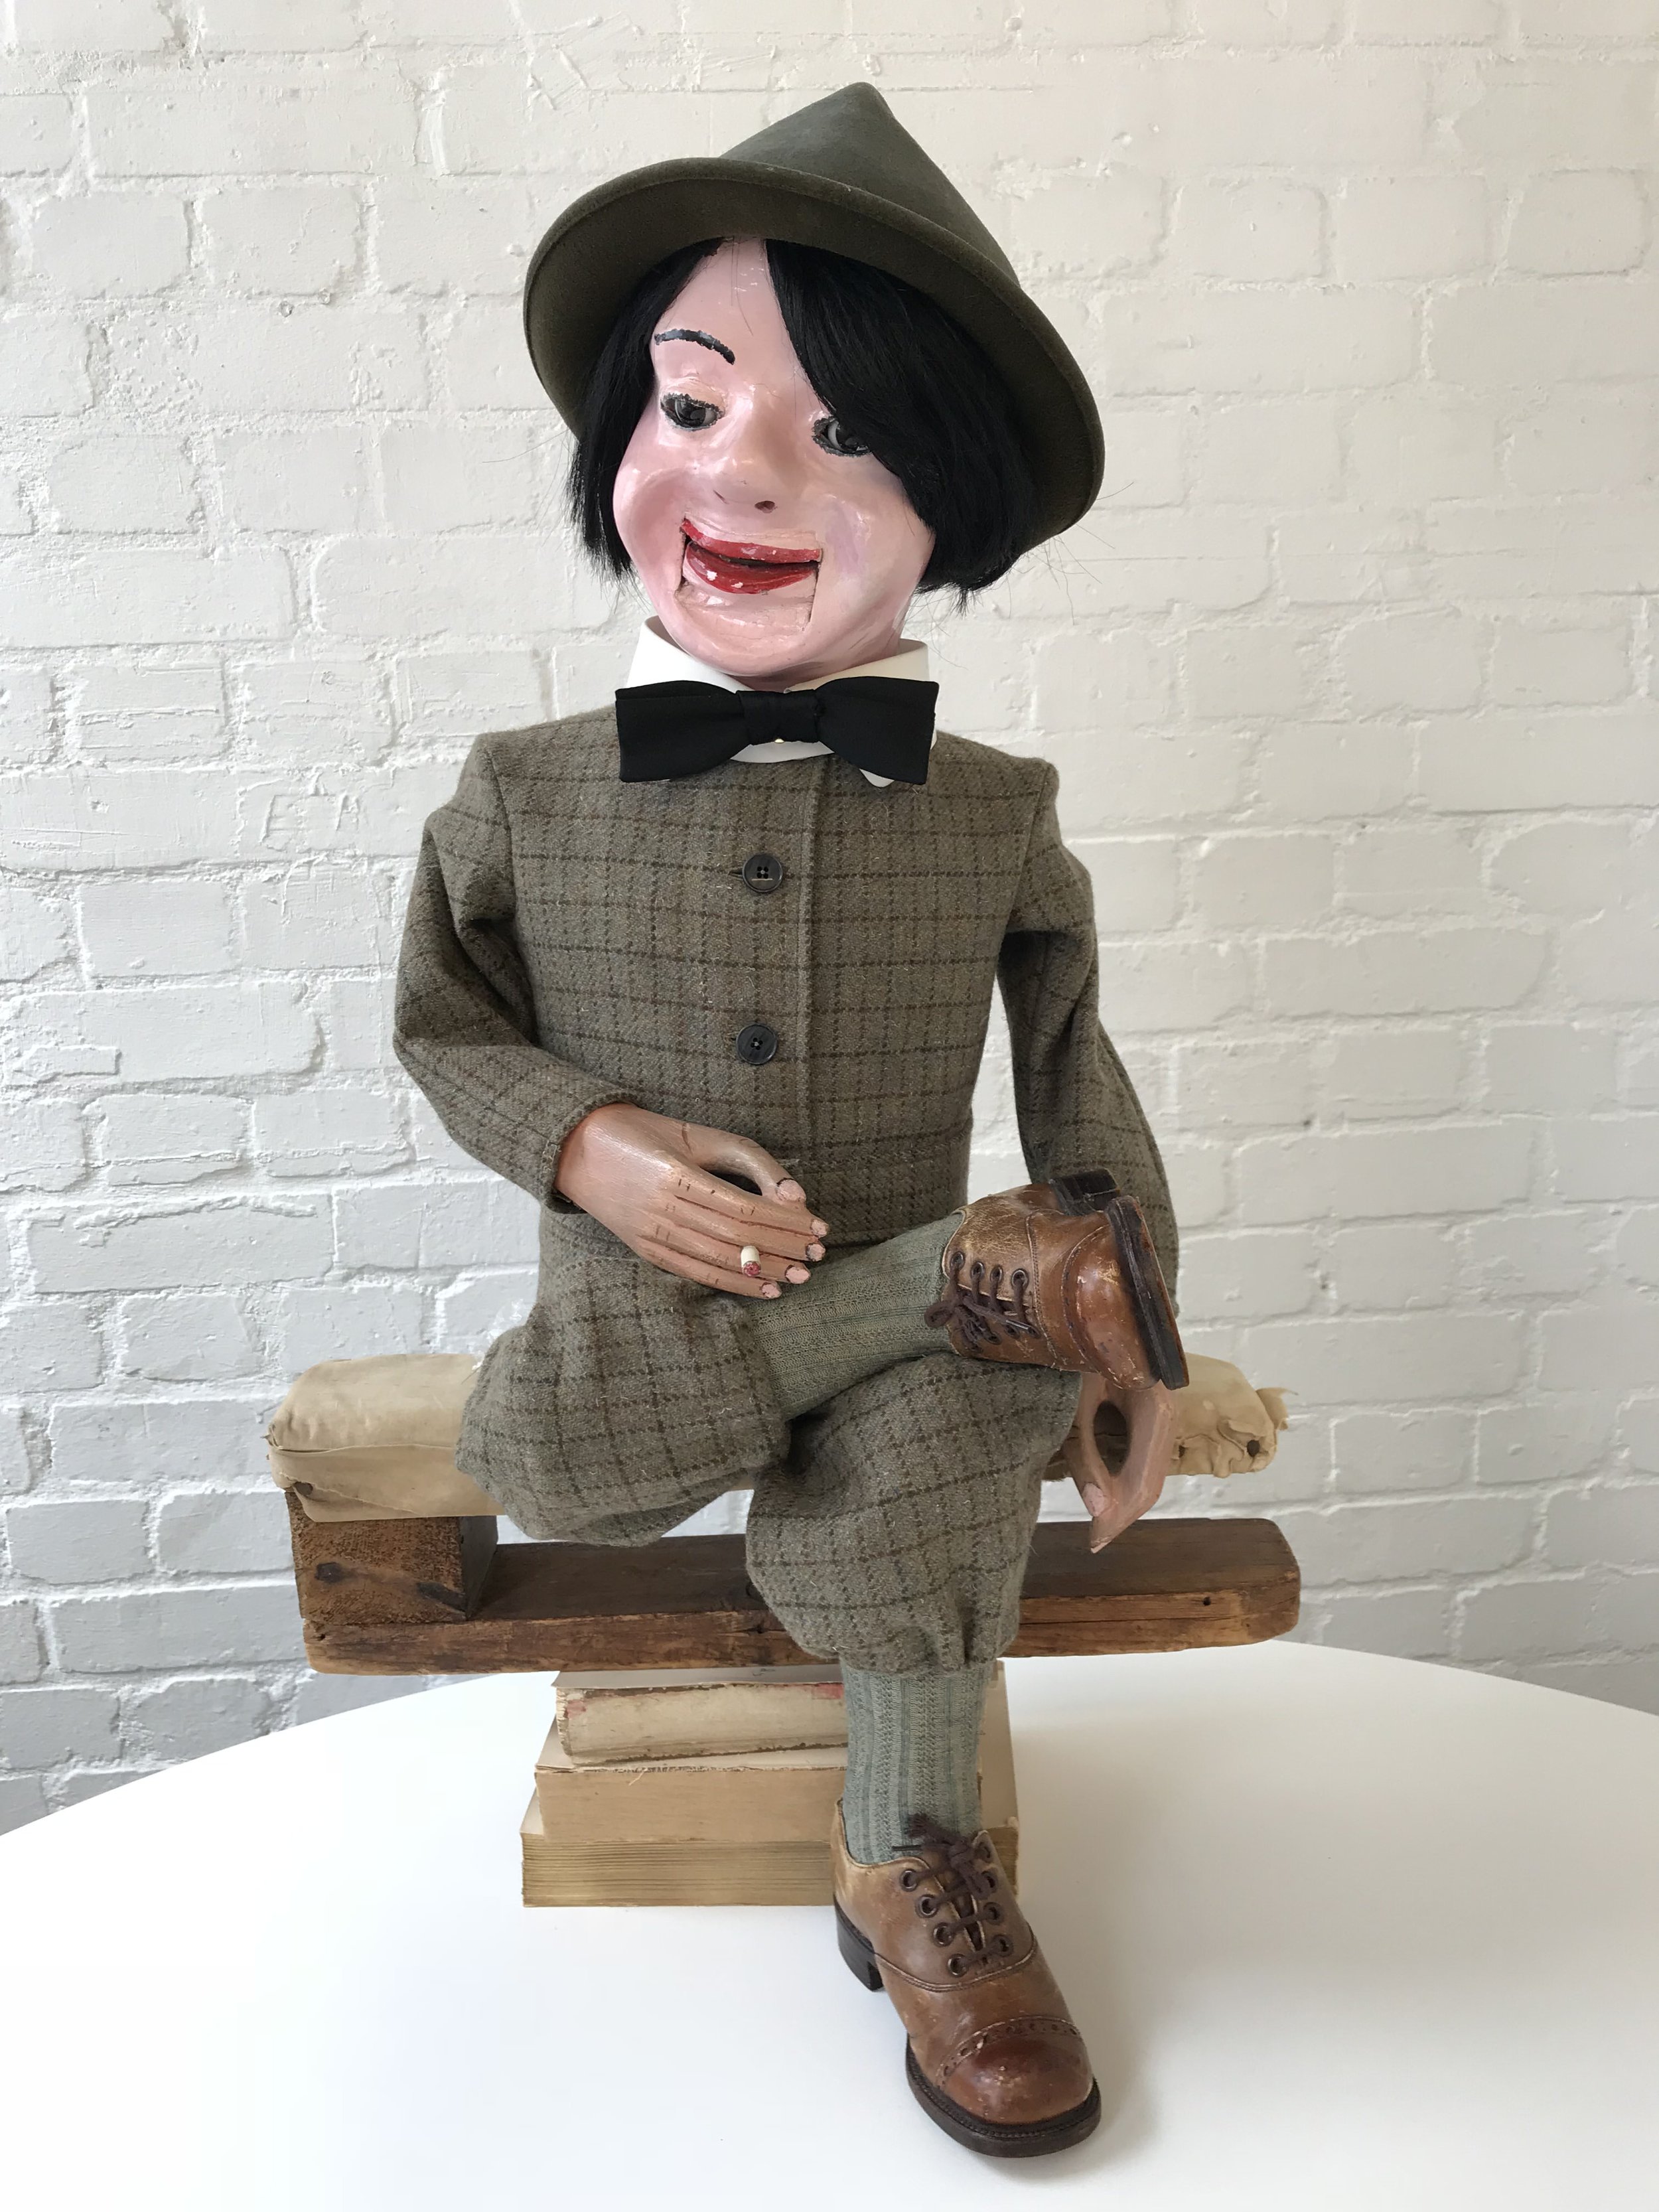 Ventriloquist Doll Suit Puppet Restoration